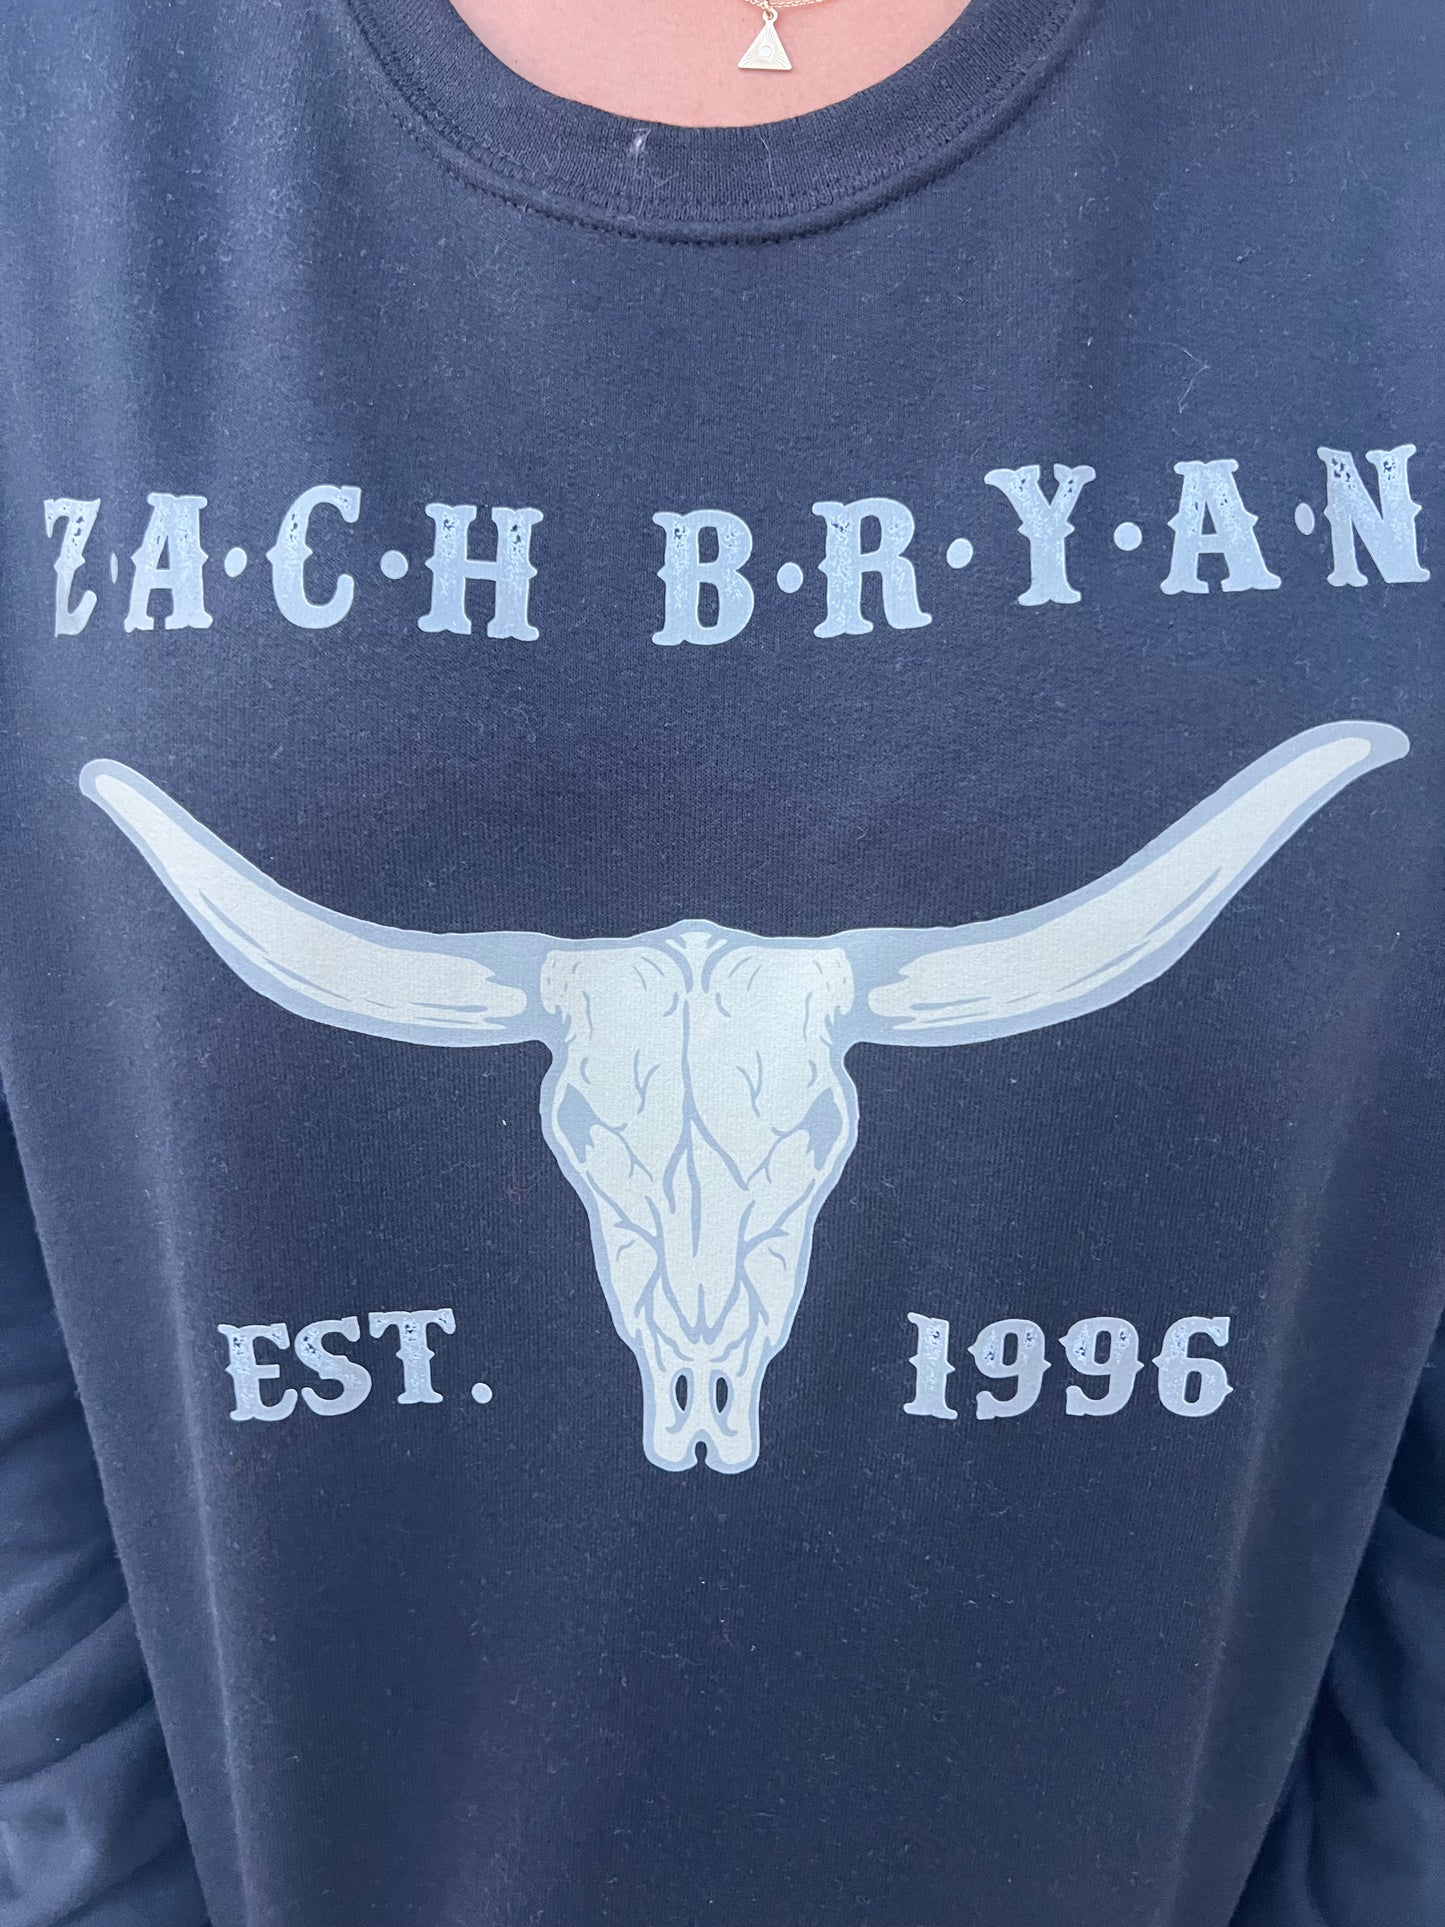 Zach Bryan 1996 Crewneck Sweatshirt